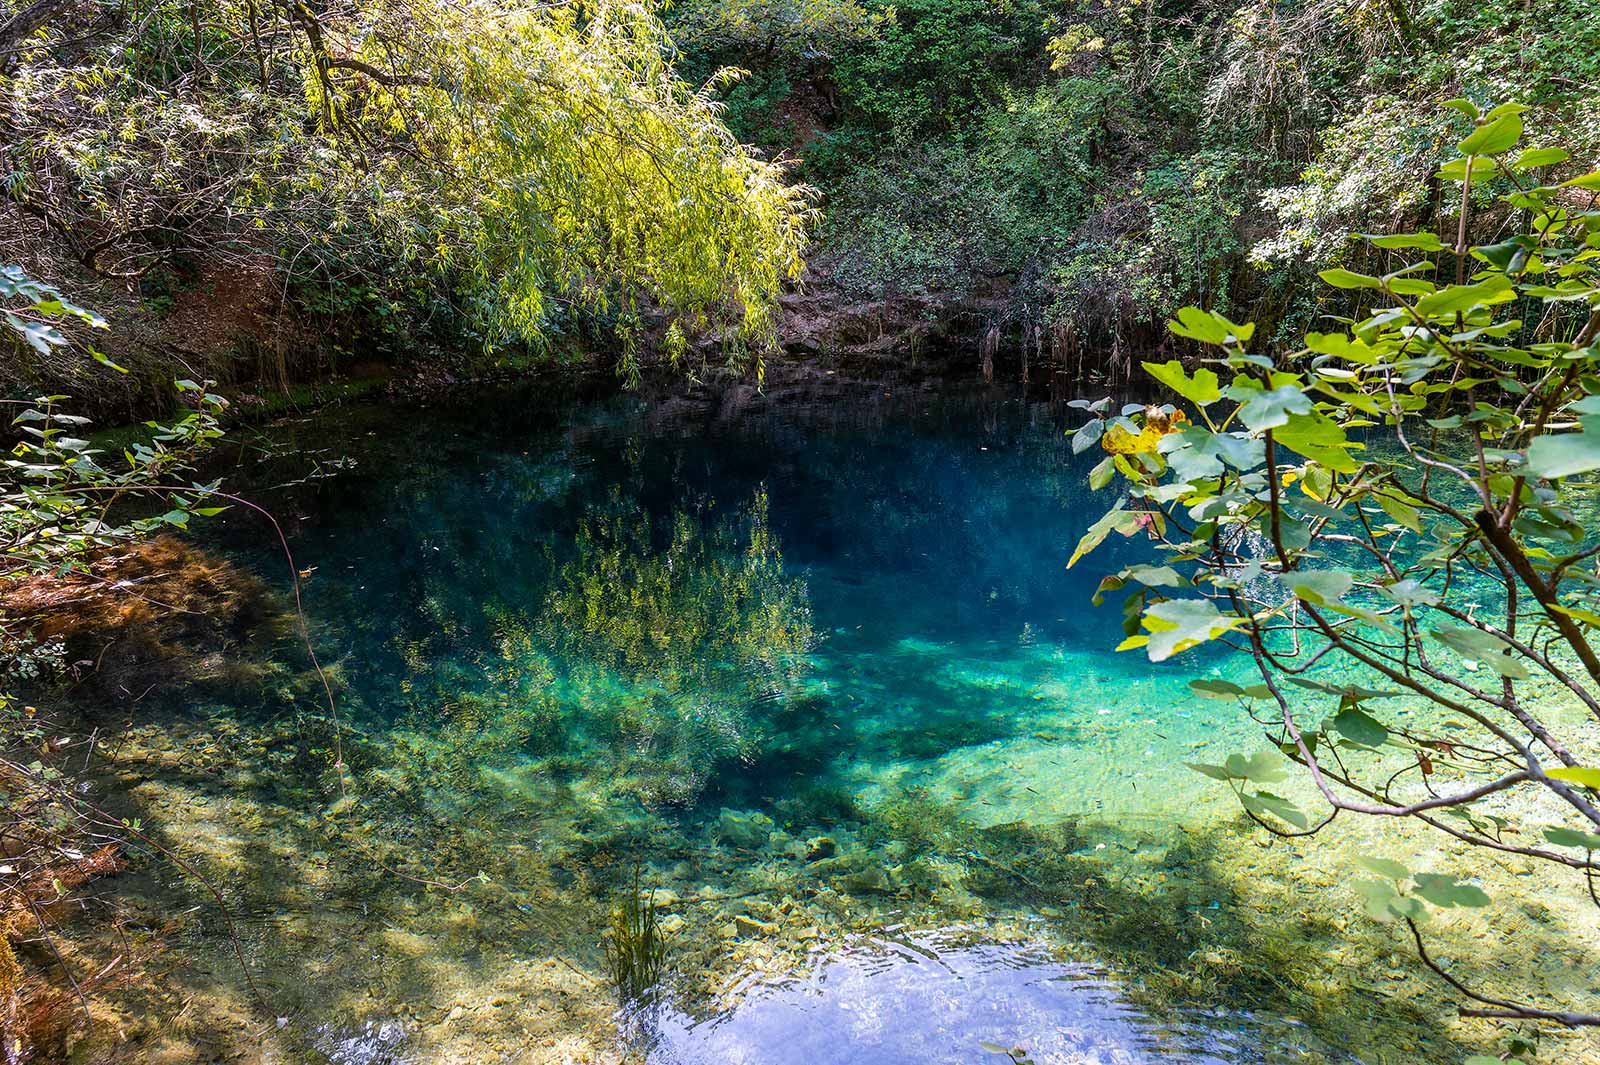 Die Font Vive ist eine geheimnisvolle Quelle inmitten der Wälder der Ardèche. Ihr Wasser leuchtet in vielen wunderschönen Farben.